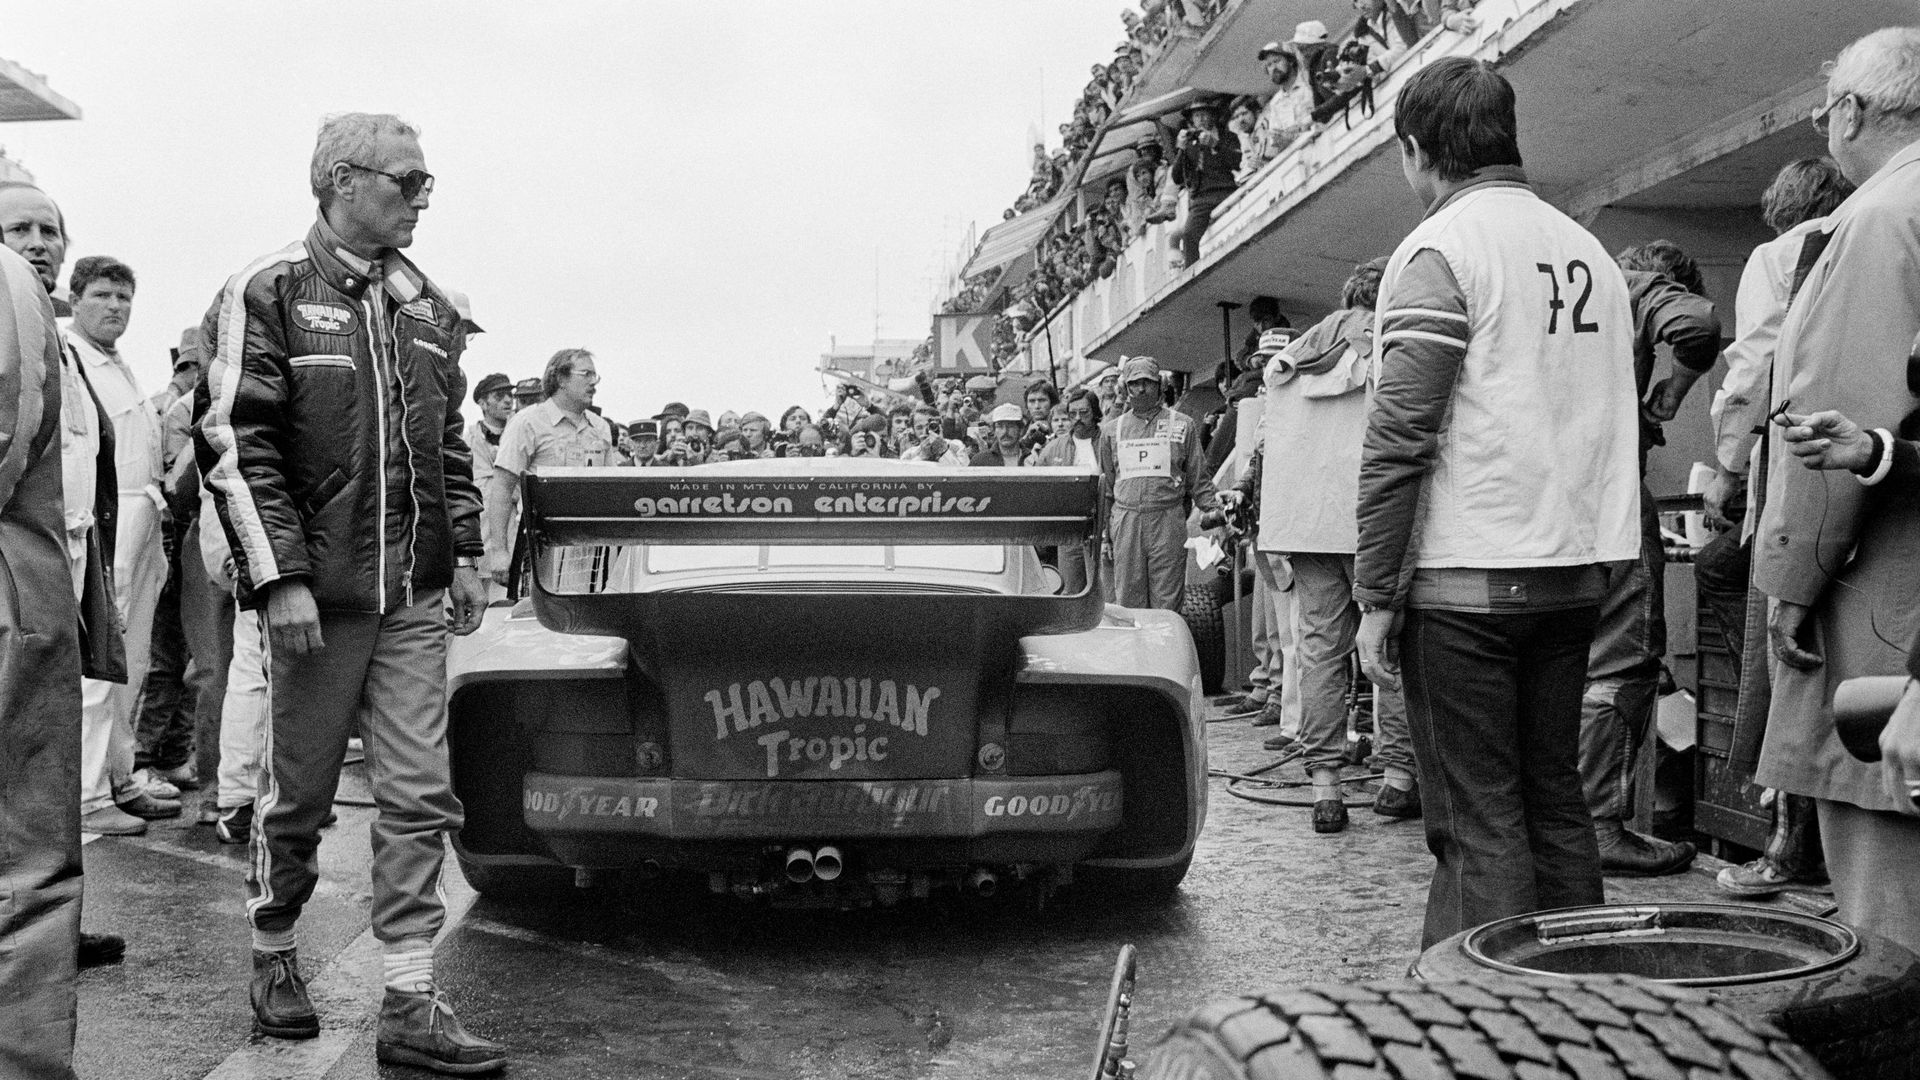 L’acteur américain Paul Newman marche dans les stands, le 9 juin 1979 avant de participer à la 47e édition des 24 heures du Mans sur la Porsche 935.